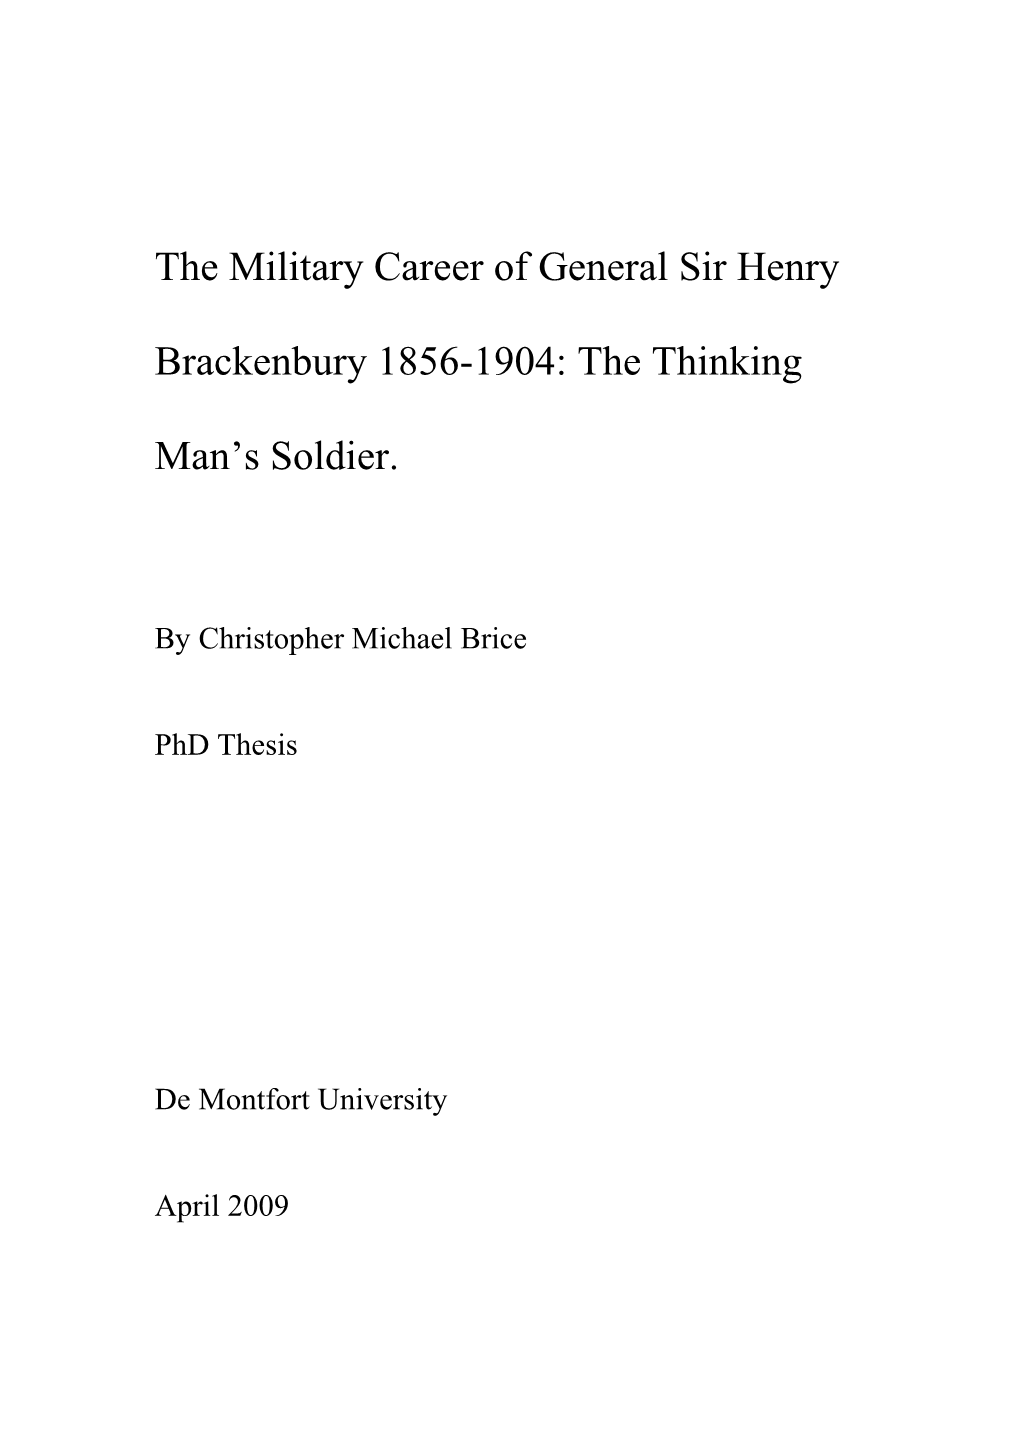 The Military Career of General Sir Henry Brackenbury 1856-1904